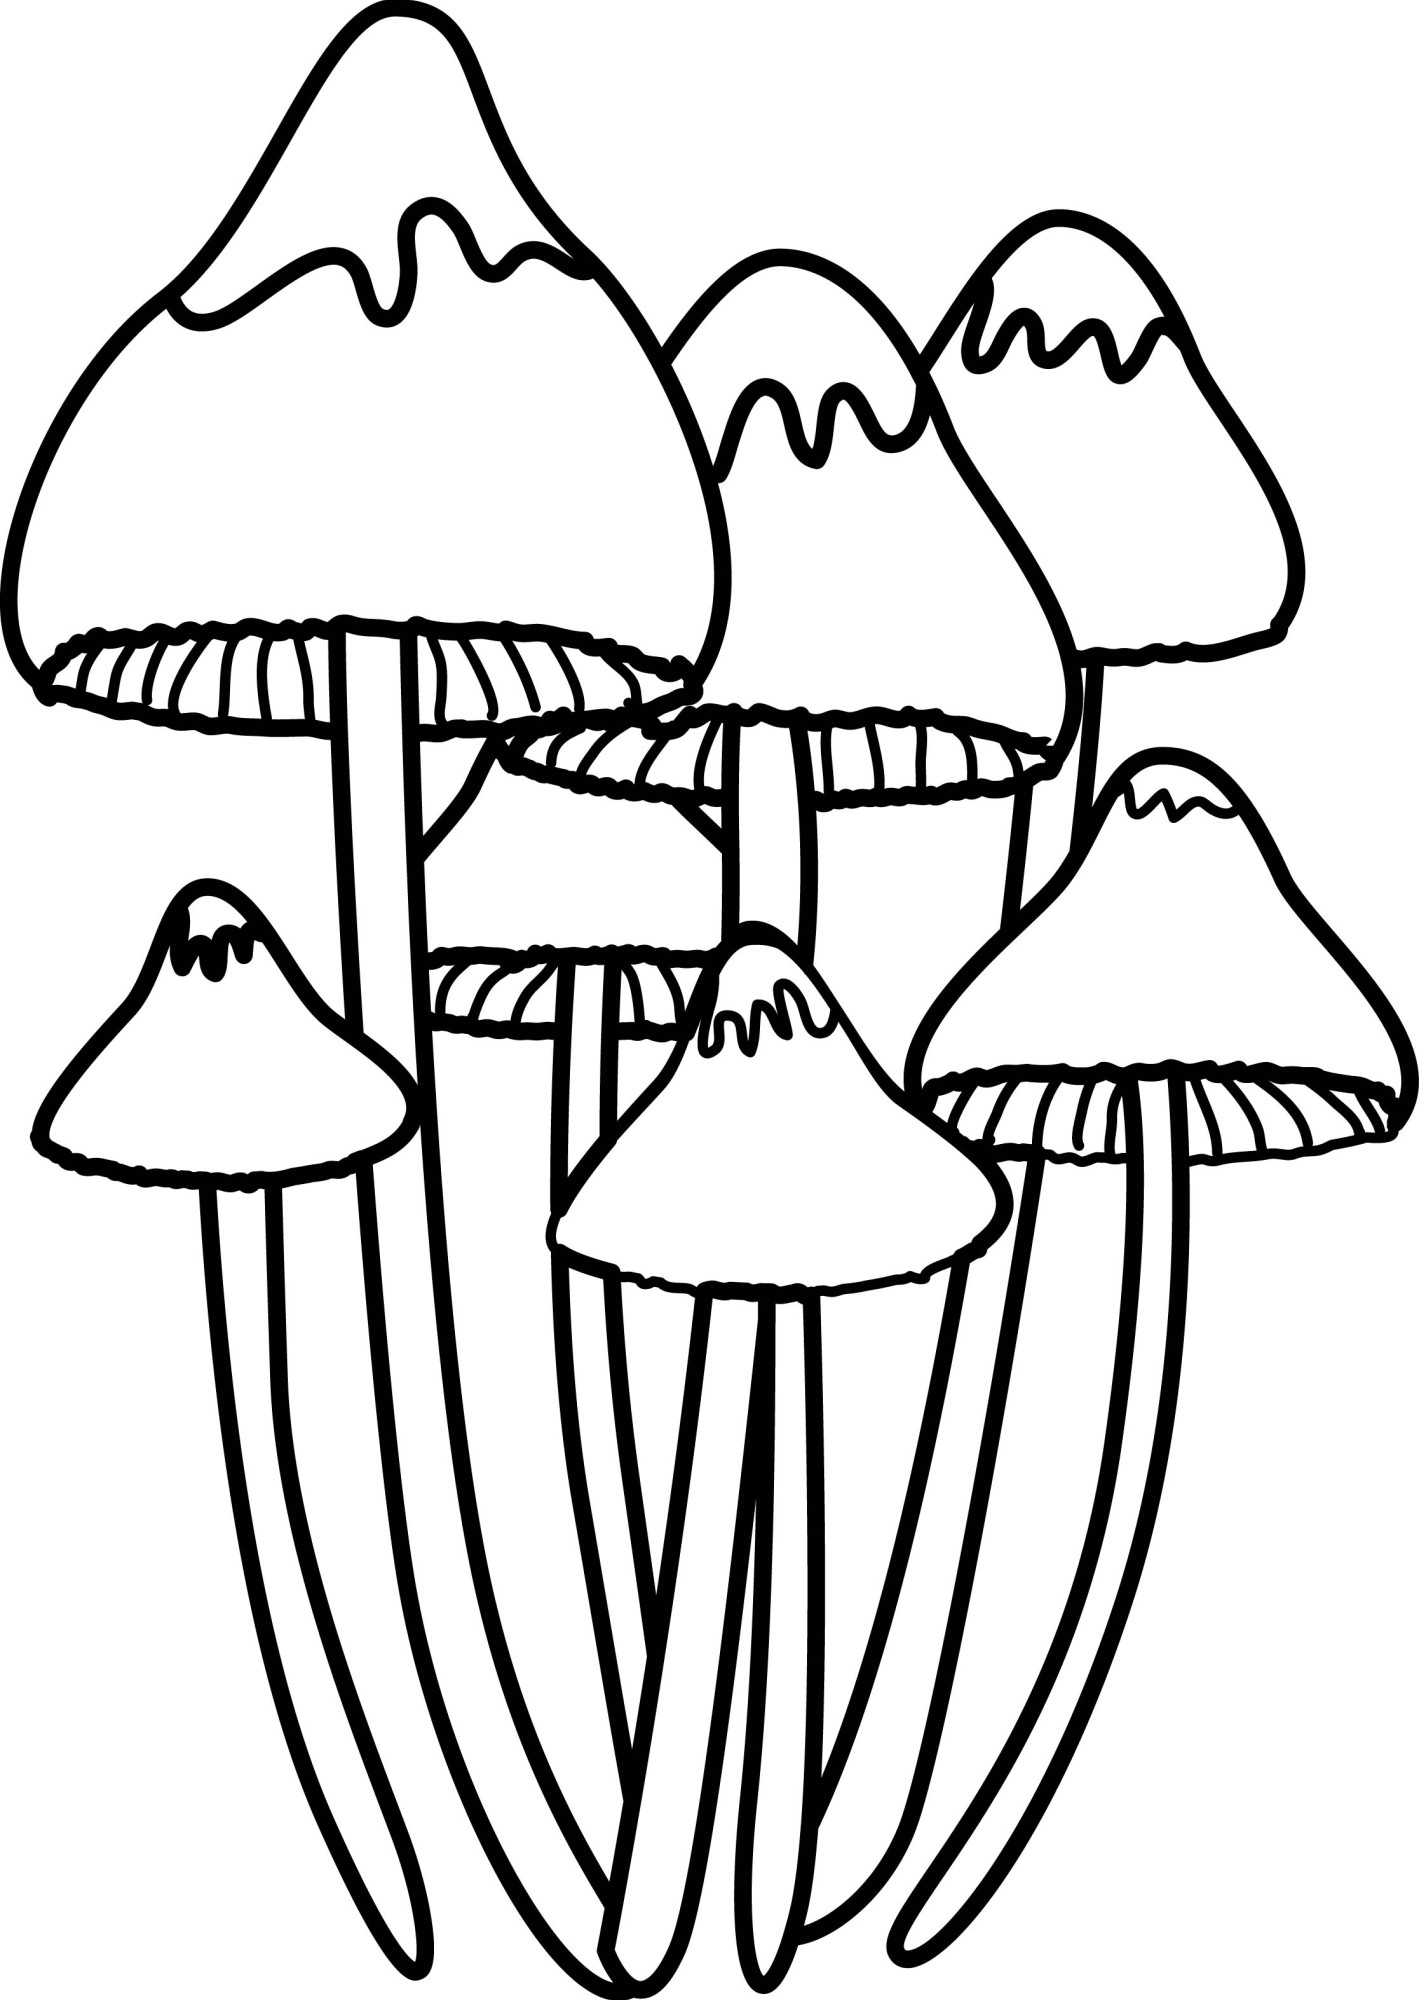 Раскраска для детей: поганка гриб